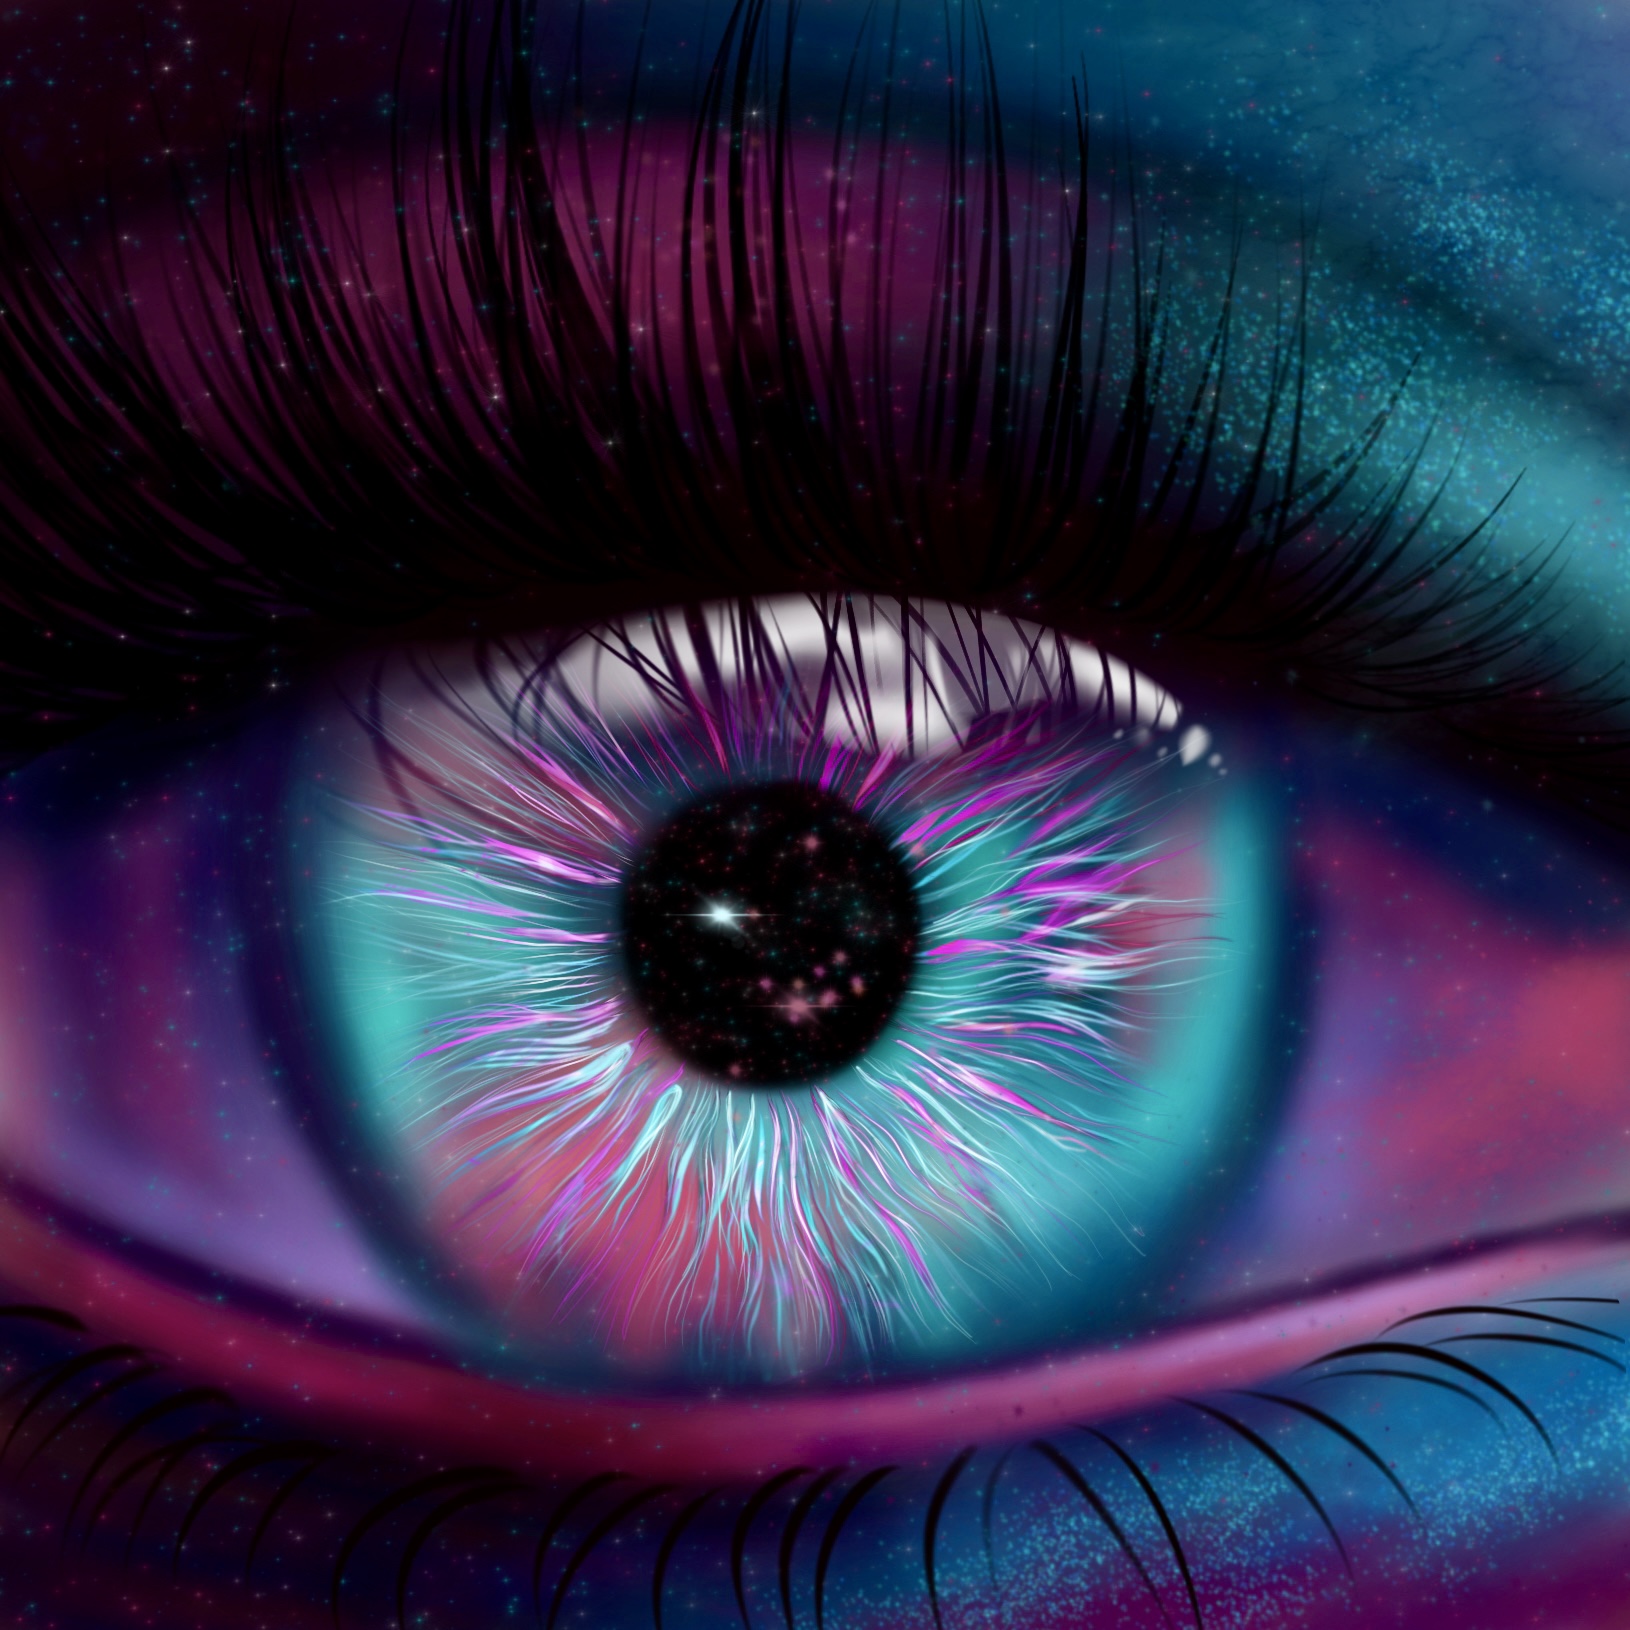 Universe eye